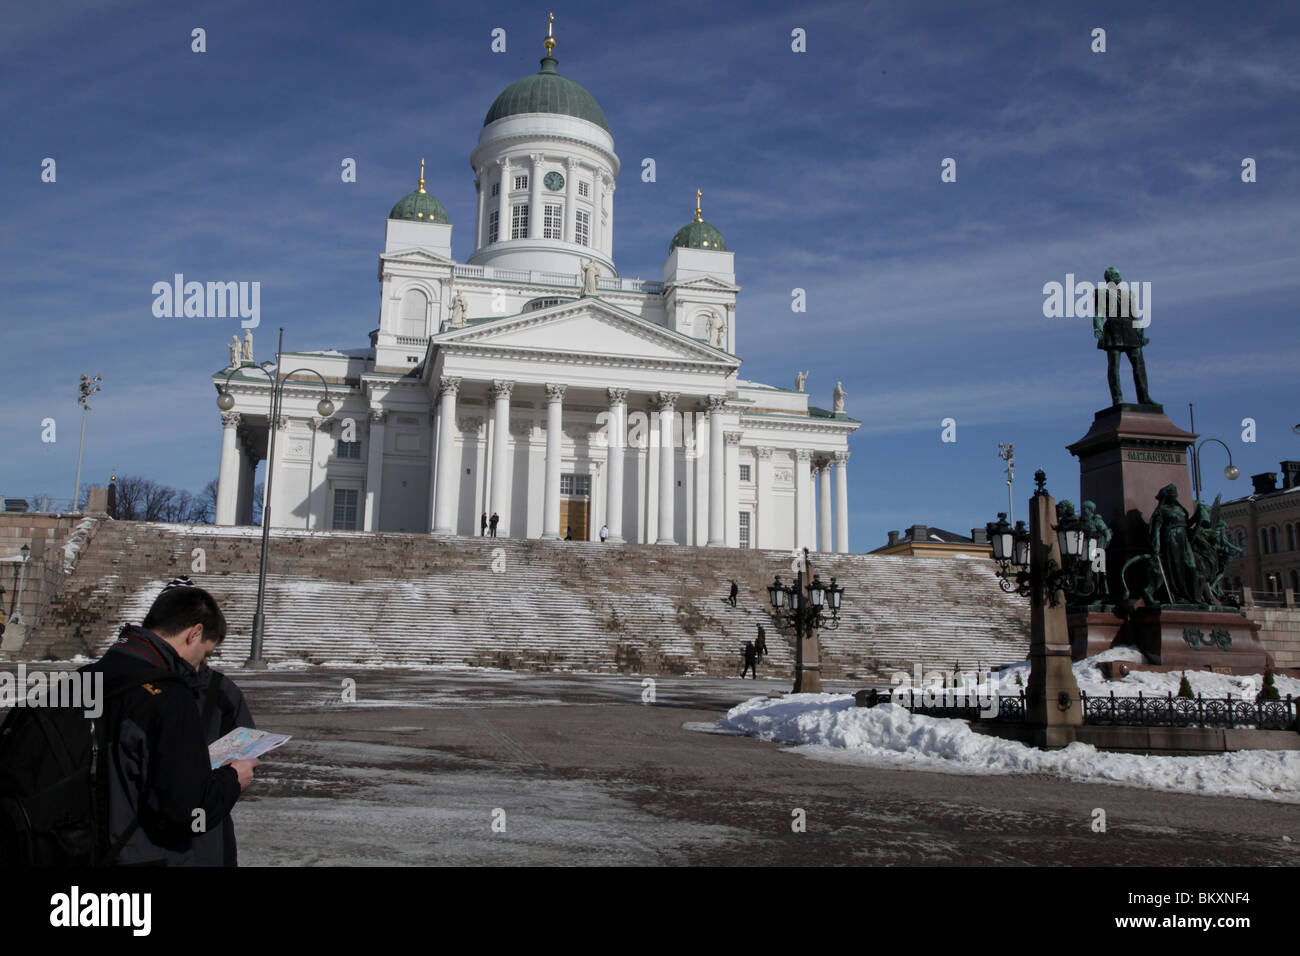 CATEDRAL, TURISTAS, MAPA, HELSINKI: Los turistas comprueban leer mapa Helsinki Plaza del Senado Catedral Escalones nieve Invierno, Finlandia Foto de stock